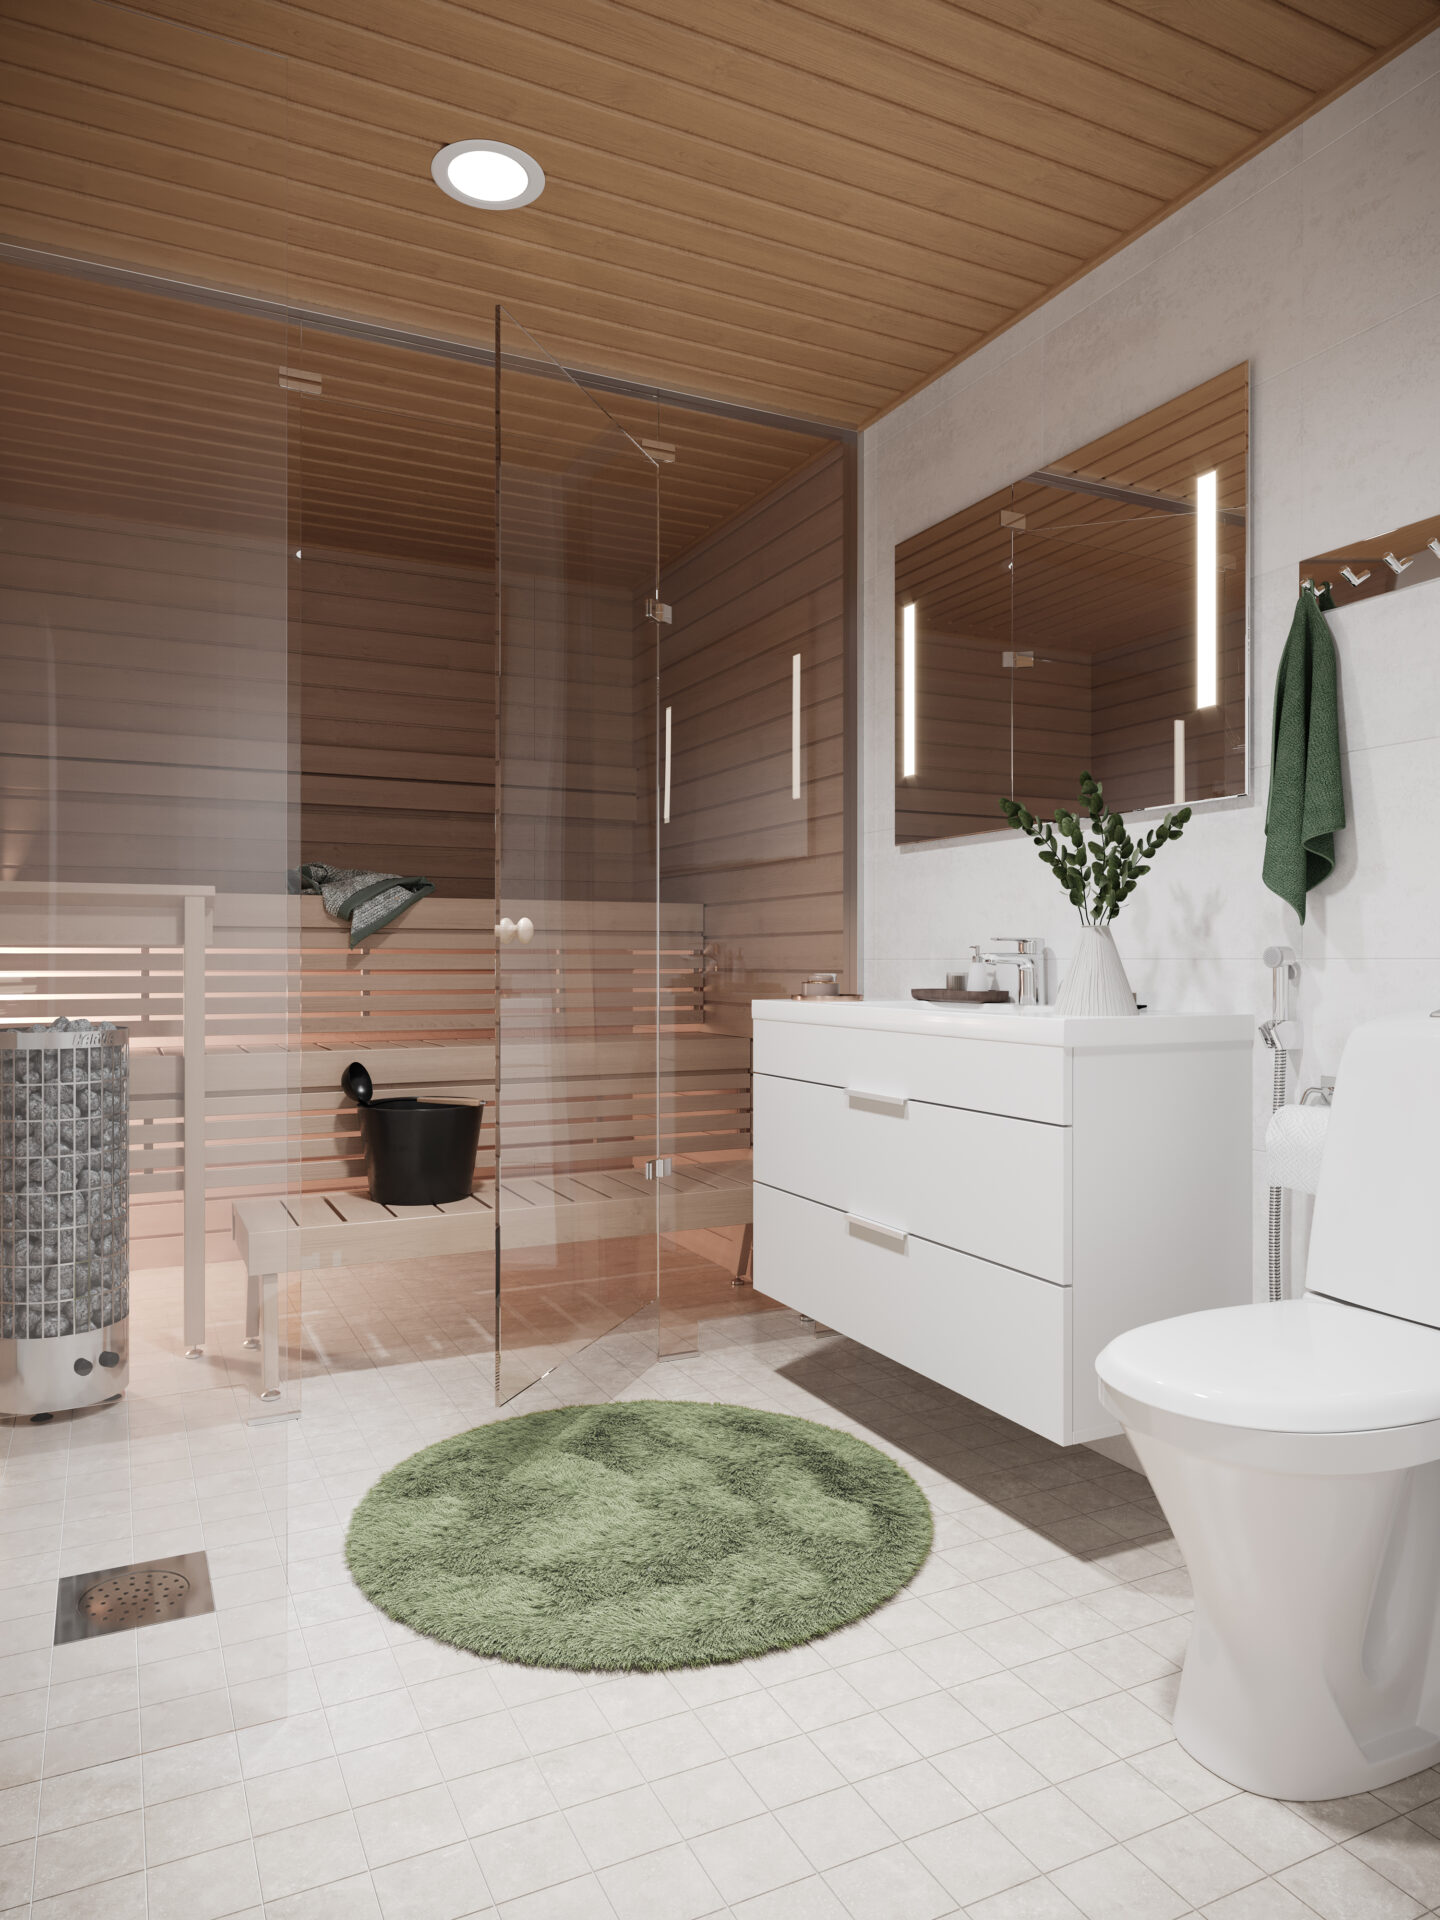 SSA Pala kylpyhuonemoduuli nopeuttaa asuntorakentamista